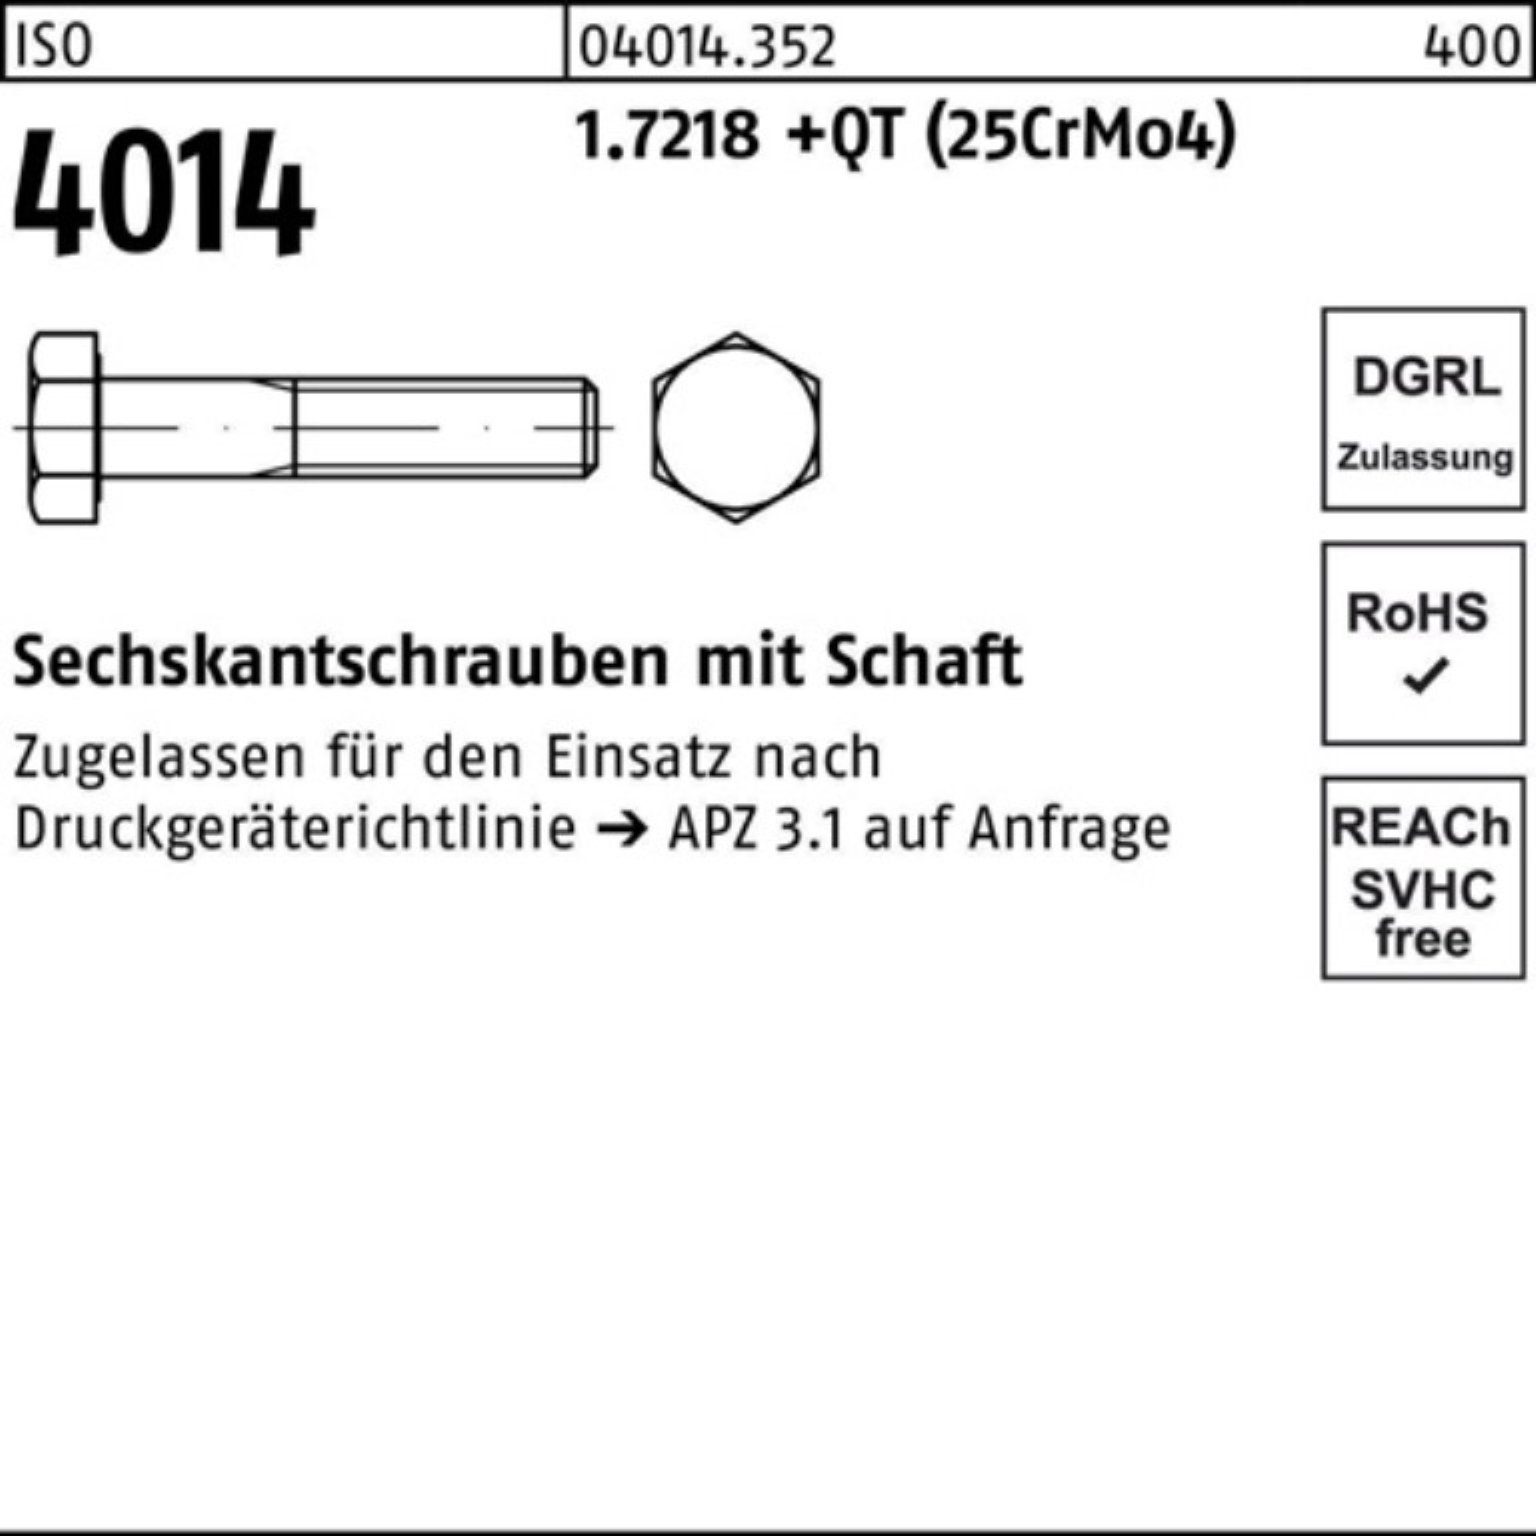 Schaft M33x 100er (25Cr +QT 1.7218 Bufab 4014 220 Pack ISO Sechskantschraube Sechskantschraube